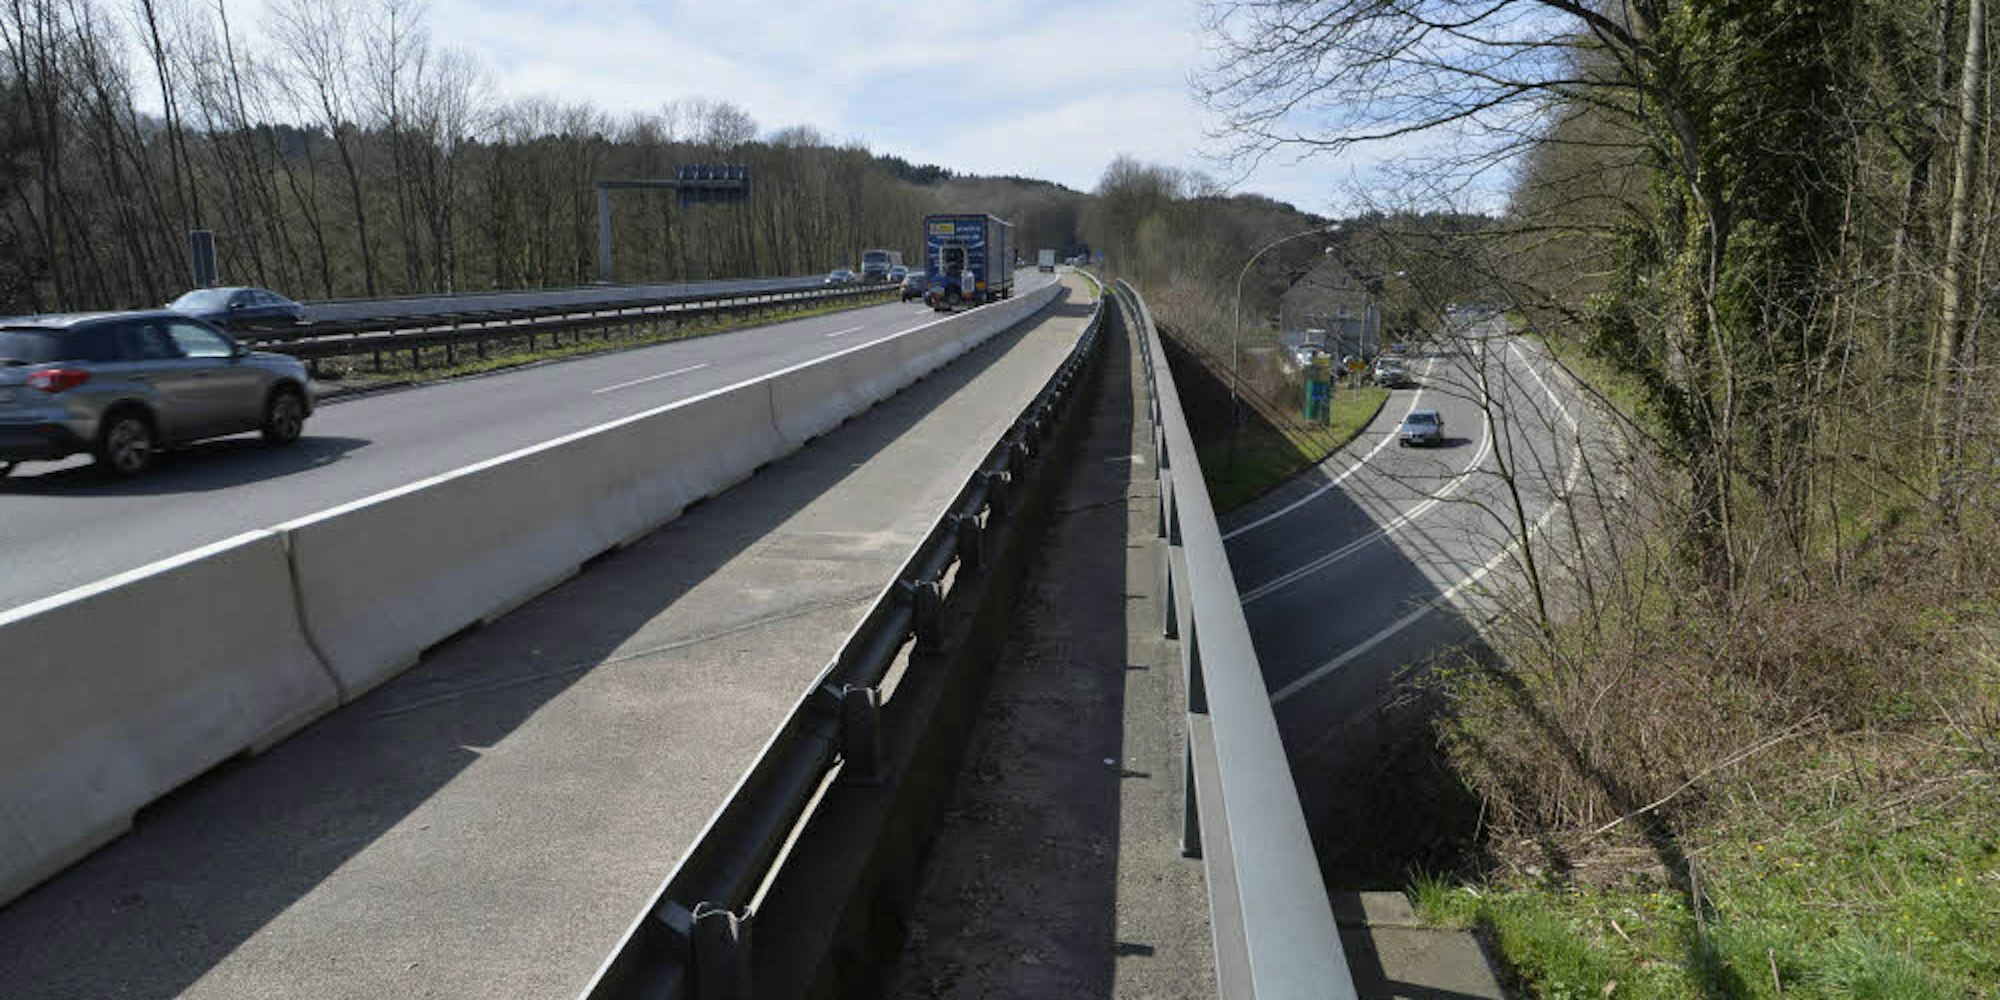 Die Autobahnbrücke bei Untereschbach soll abgebrochen werden. Eine Umleitung über die Landstraßen gilt als problematisch.